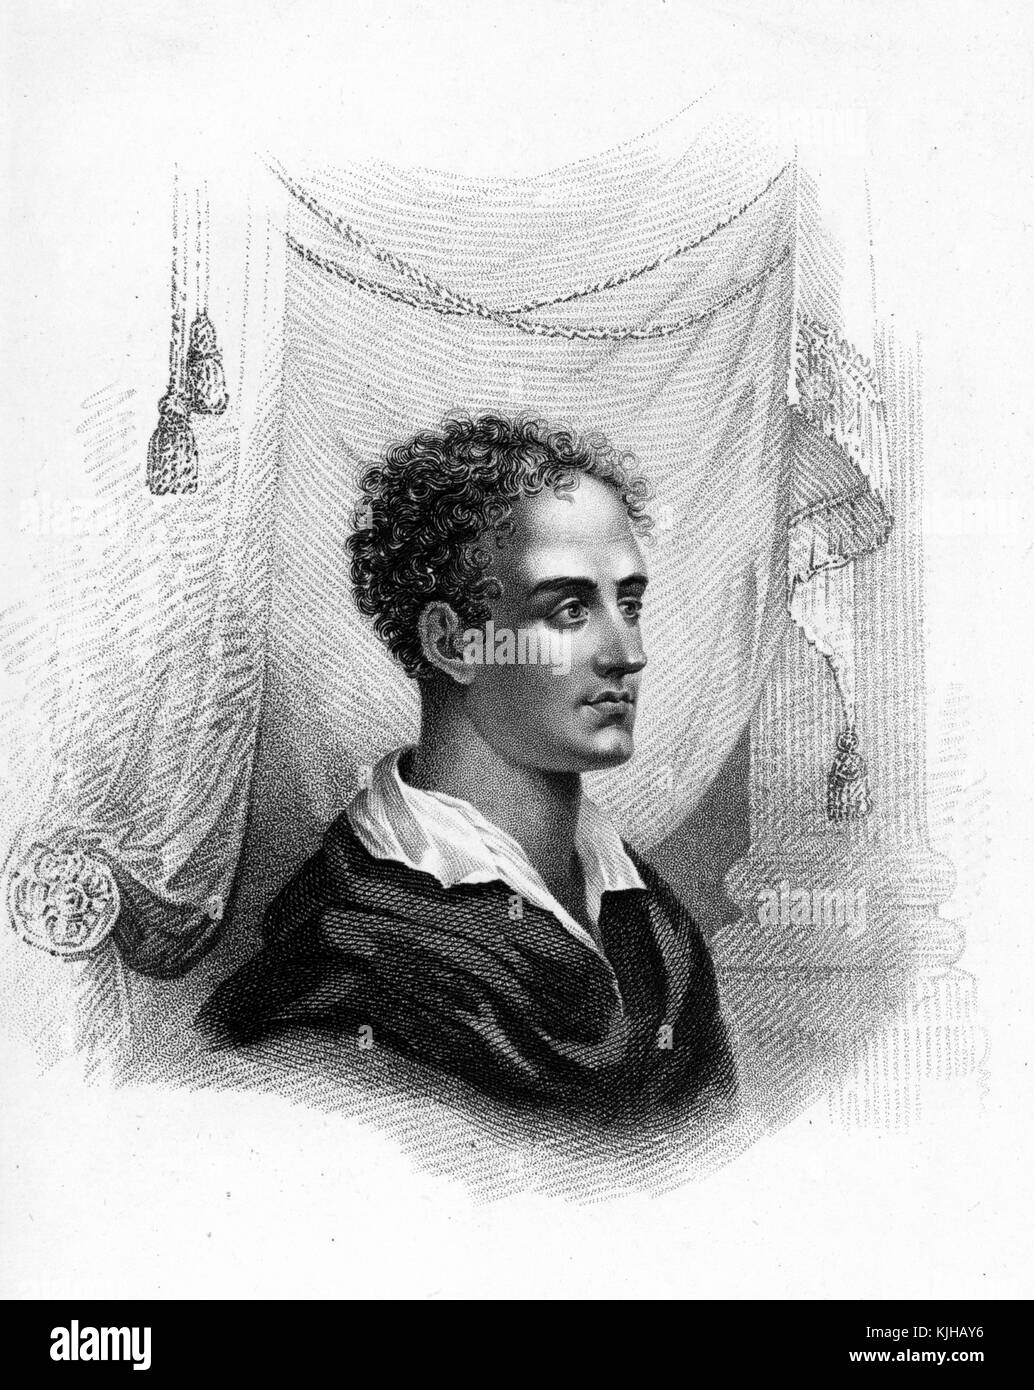 Ein Gravur aus einem Porträt von Lord Byron, er war ein englischer Dichter, dessen Werke in der ganzen Welt populär sind, er war eine prominente Figur in der romantischen Bewegung, er war bekannt für sein Überleben, Geschichten über ihn umgaben sein Leben voller Liebesbeziehungen mit Männern und Frauen, zusammen mit riesigen Schulden, gilt er als Held in Griechenland, weil er mit ihnen gegen das Osmanische Reich kämpfte, er starb im Alter von 36, 1864 Jahren. Aus der New York Public Library. Stockfoto